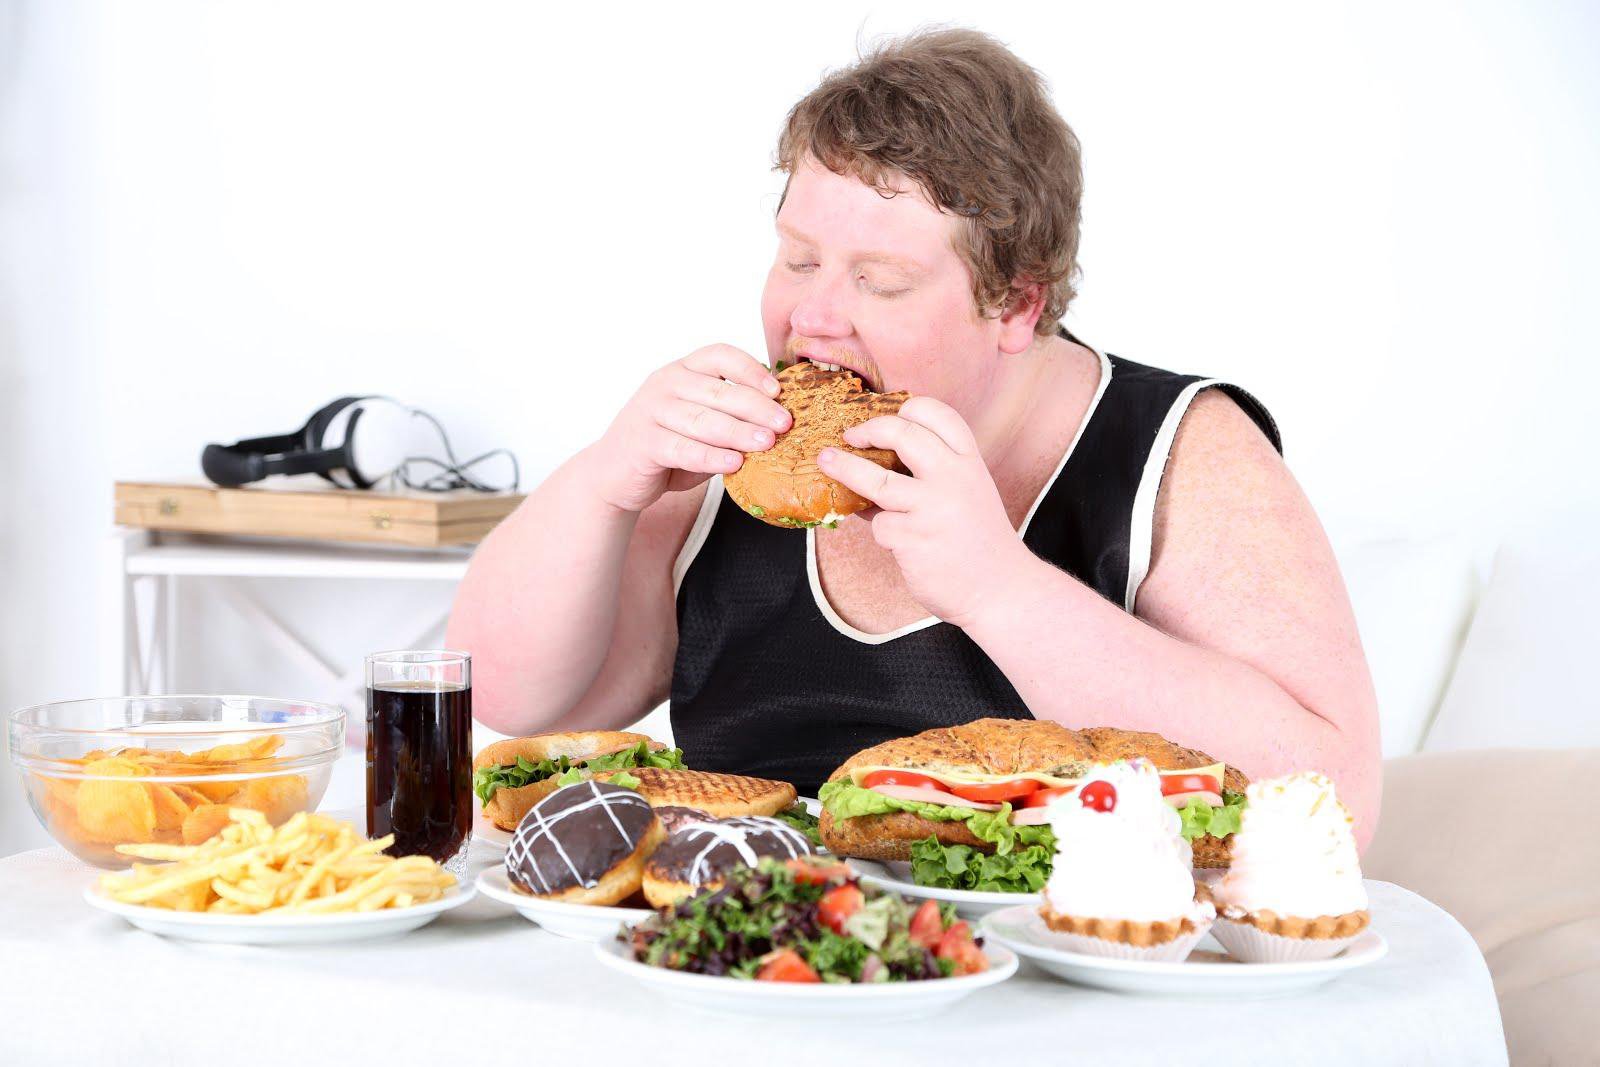 سریع غذا خوردن خطر اضافه وزن و چاقی را افزایش می دهد